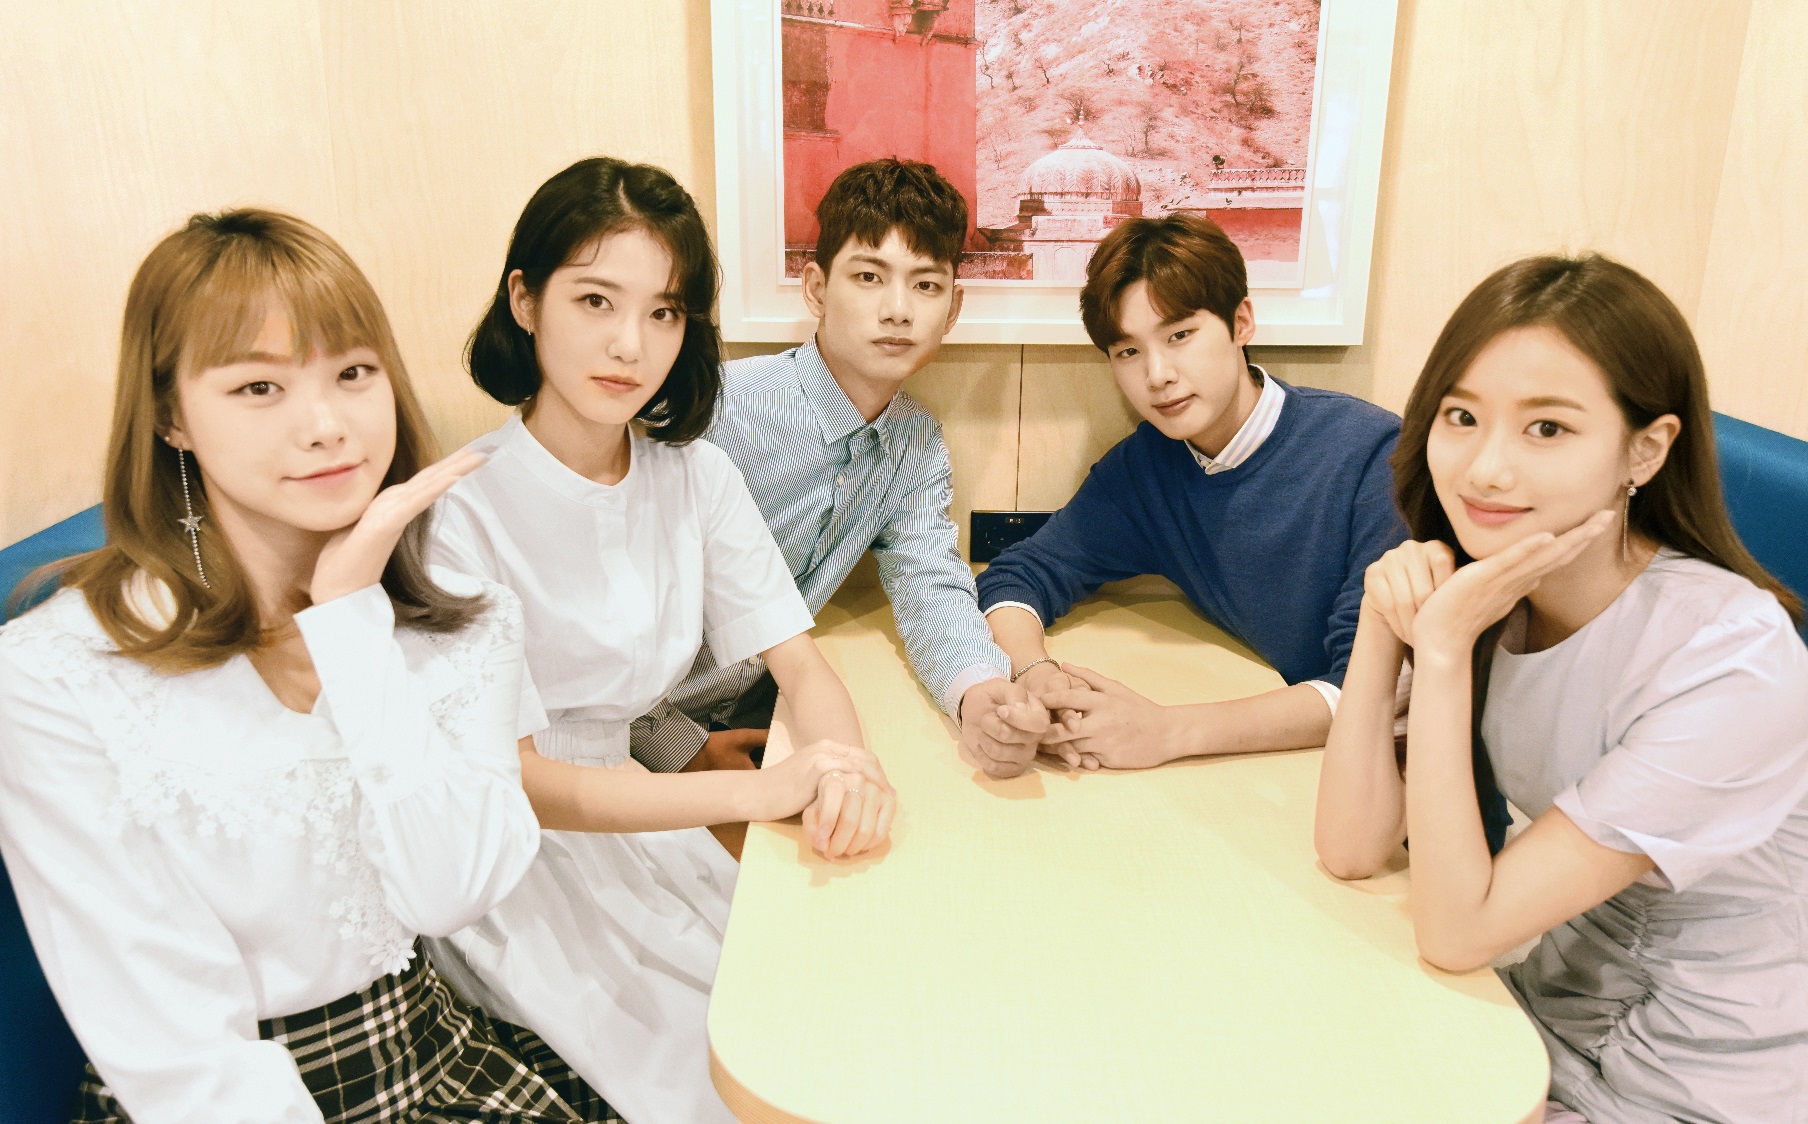 웹드라마 ‘에이틴’ 배우들. 왼쪽부터 김수현, 신예은, 의현, 김동희, 이나은. 최해국 선임기자seaworld@seoul.co.kr